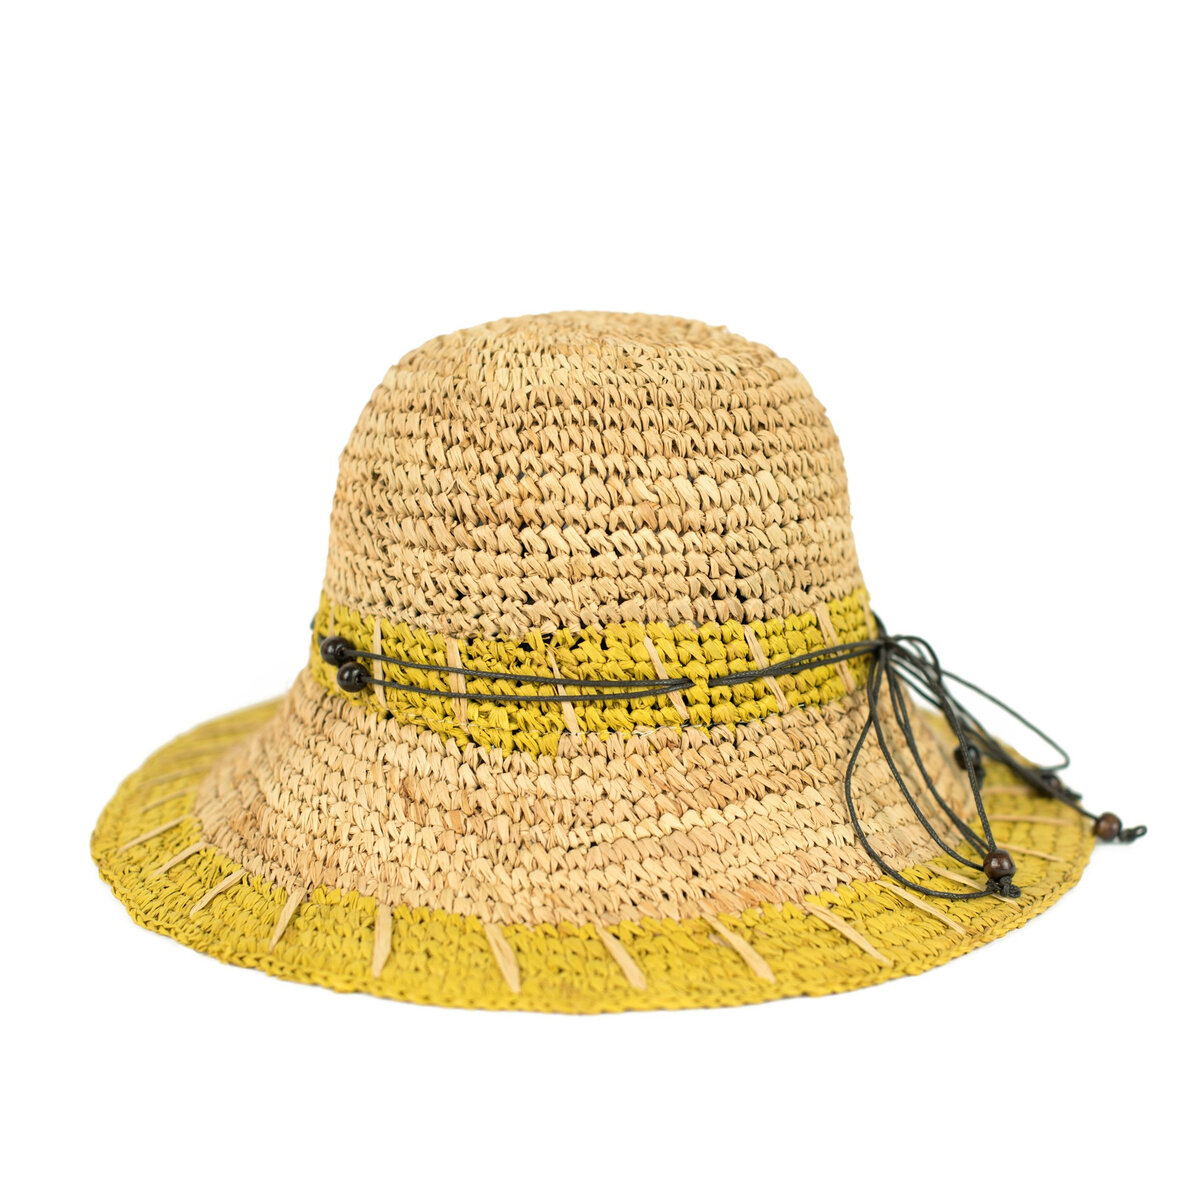 Letní dámský klobouk s korálky - Hořčicová krása, one size i10_P68264_2:416_